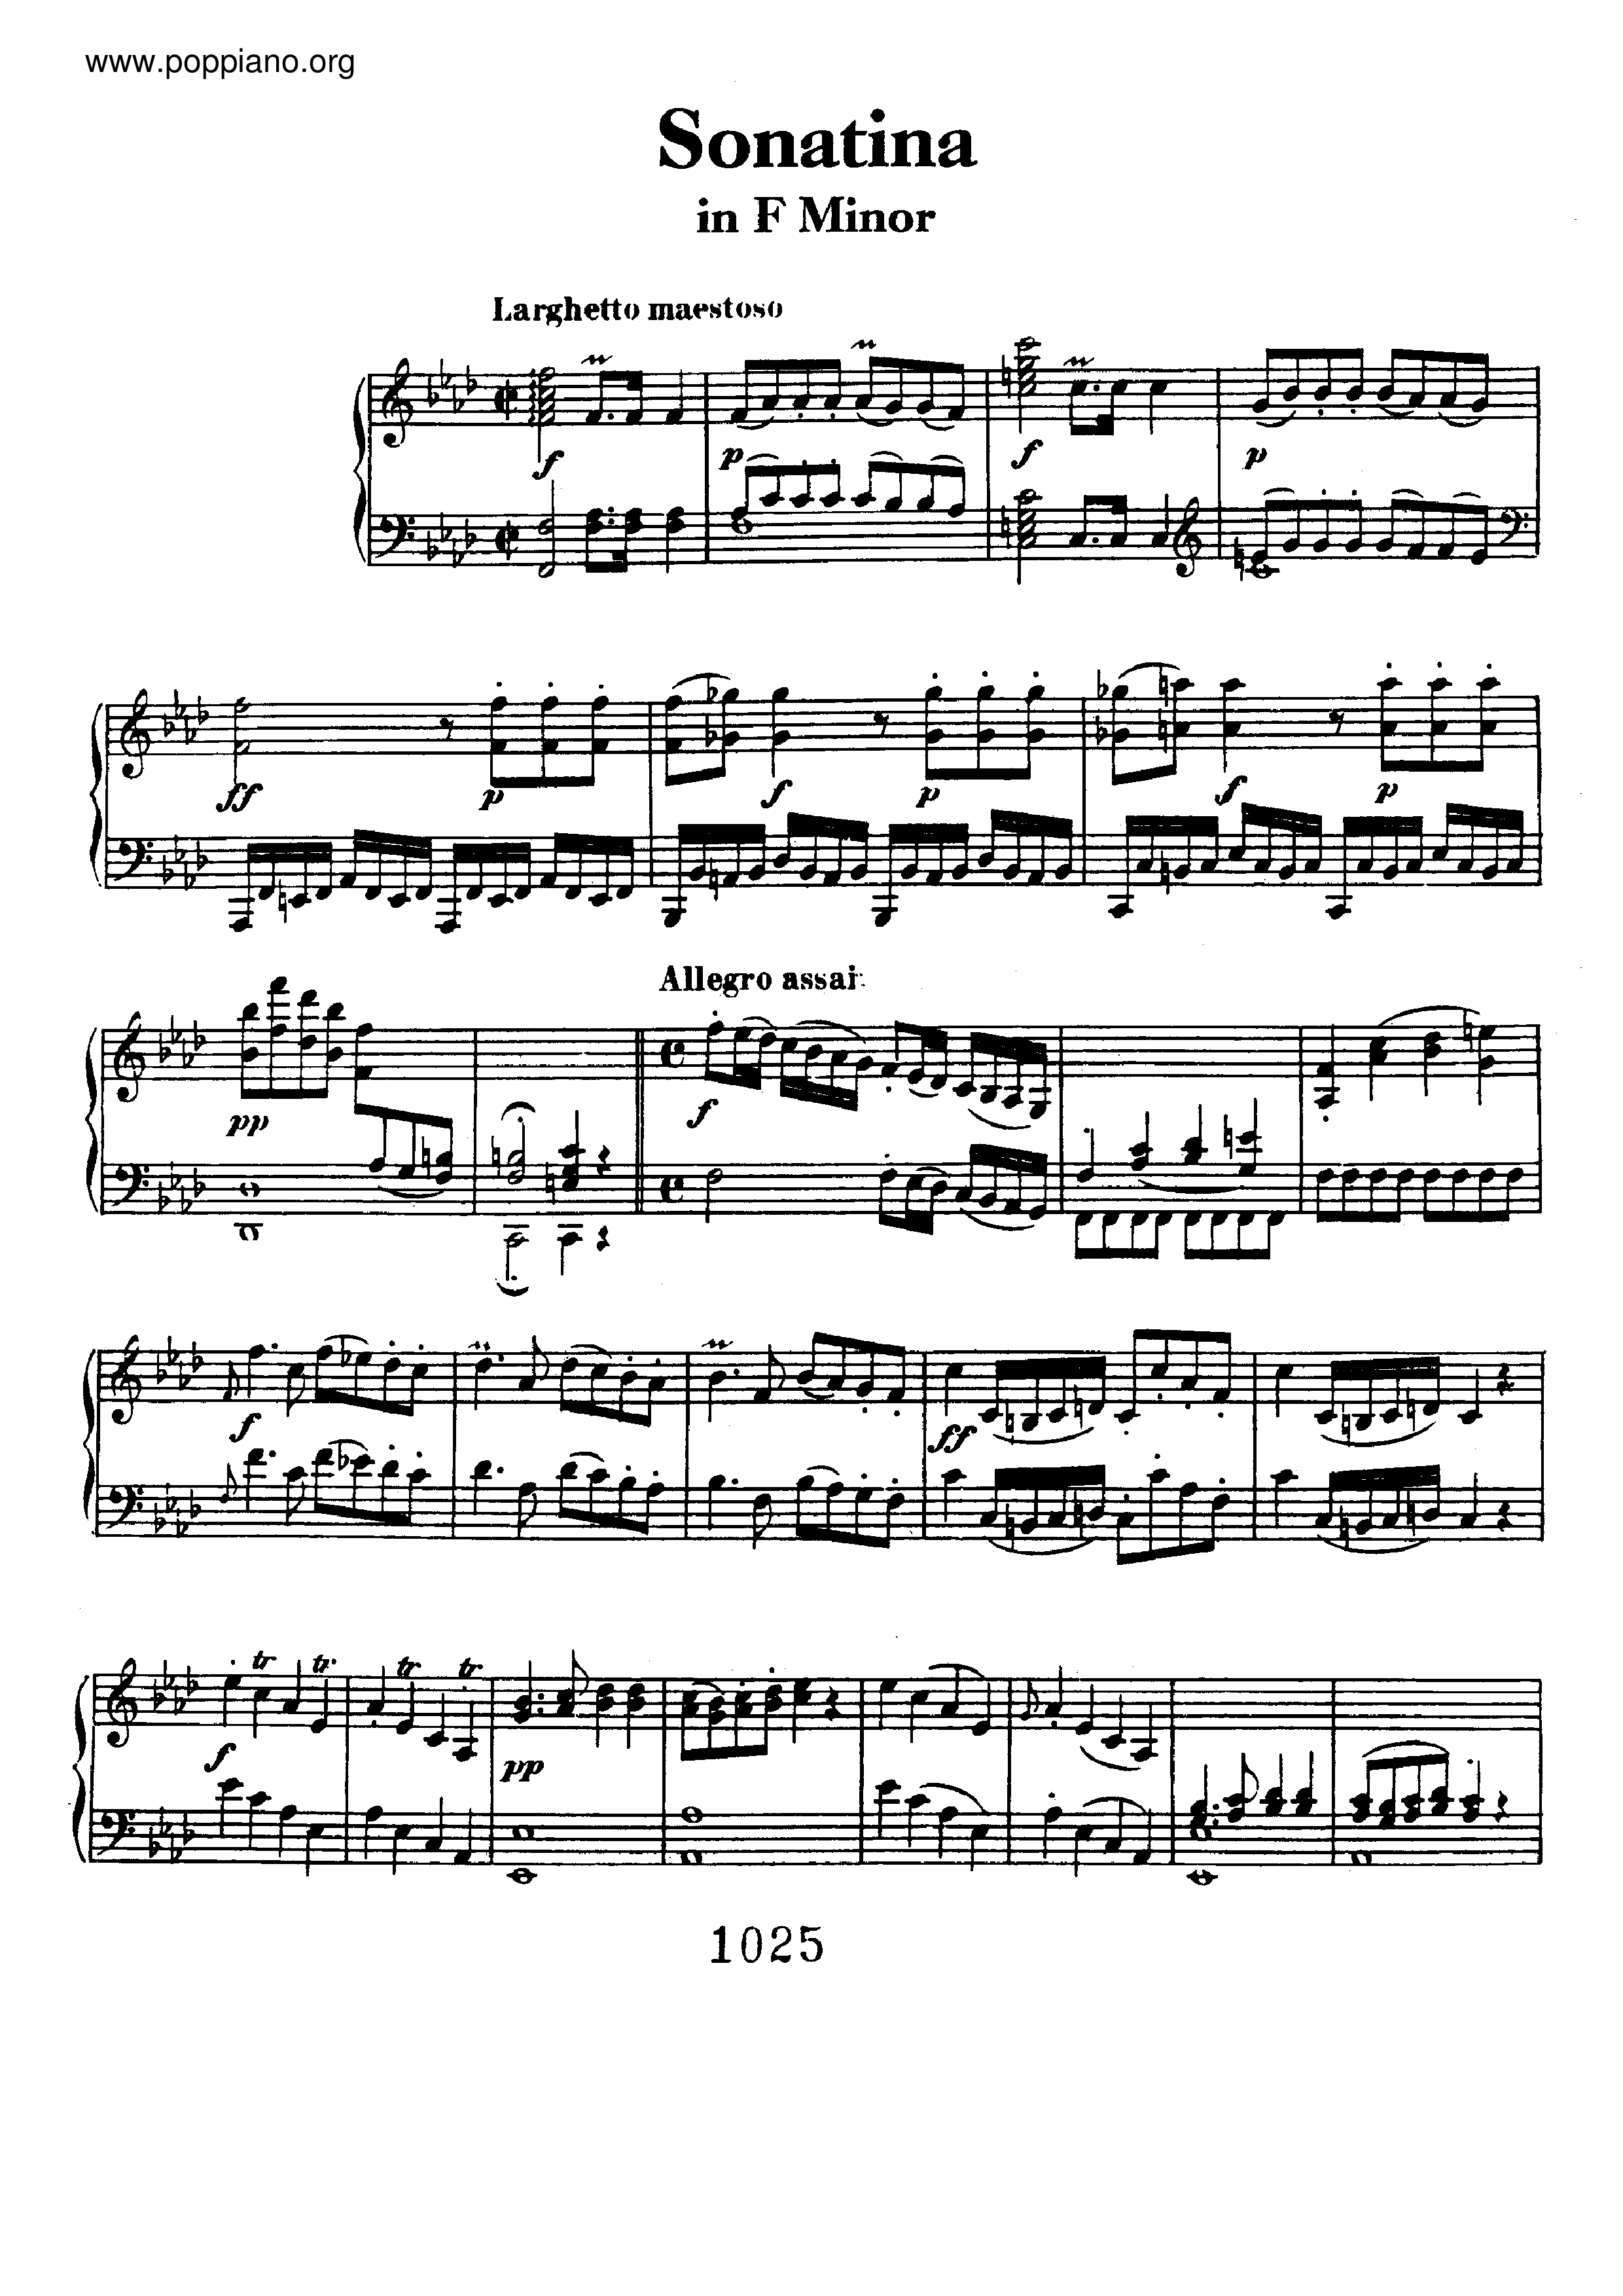 Sonatina in F minor Score